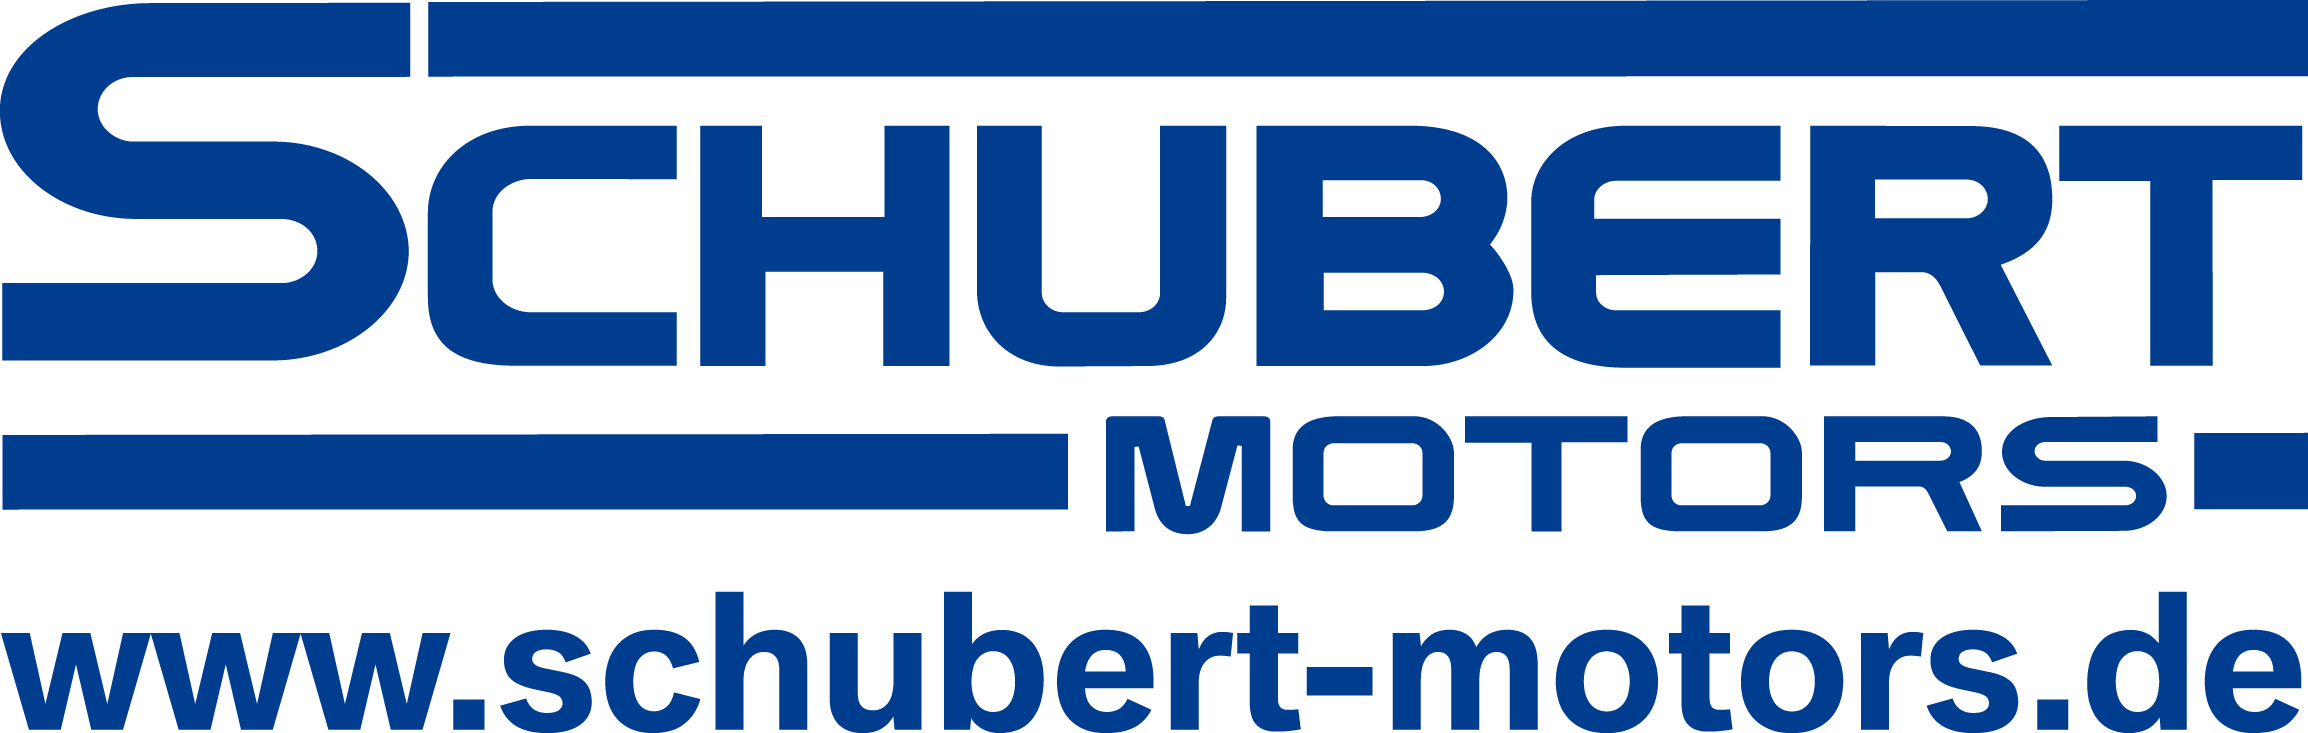 Akuelles bei Schubert - Schubert Motors